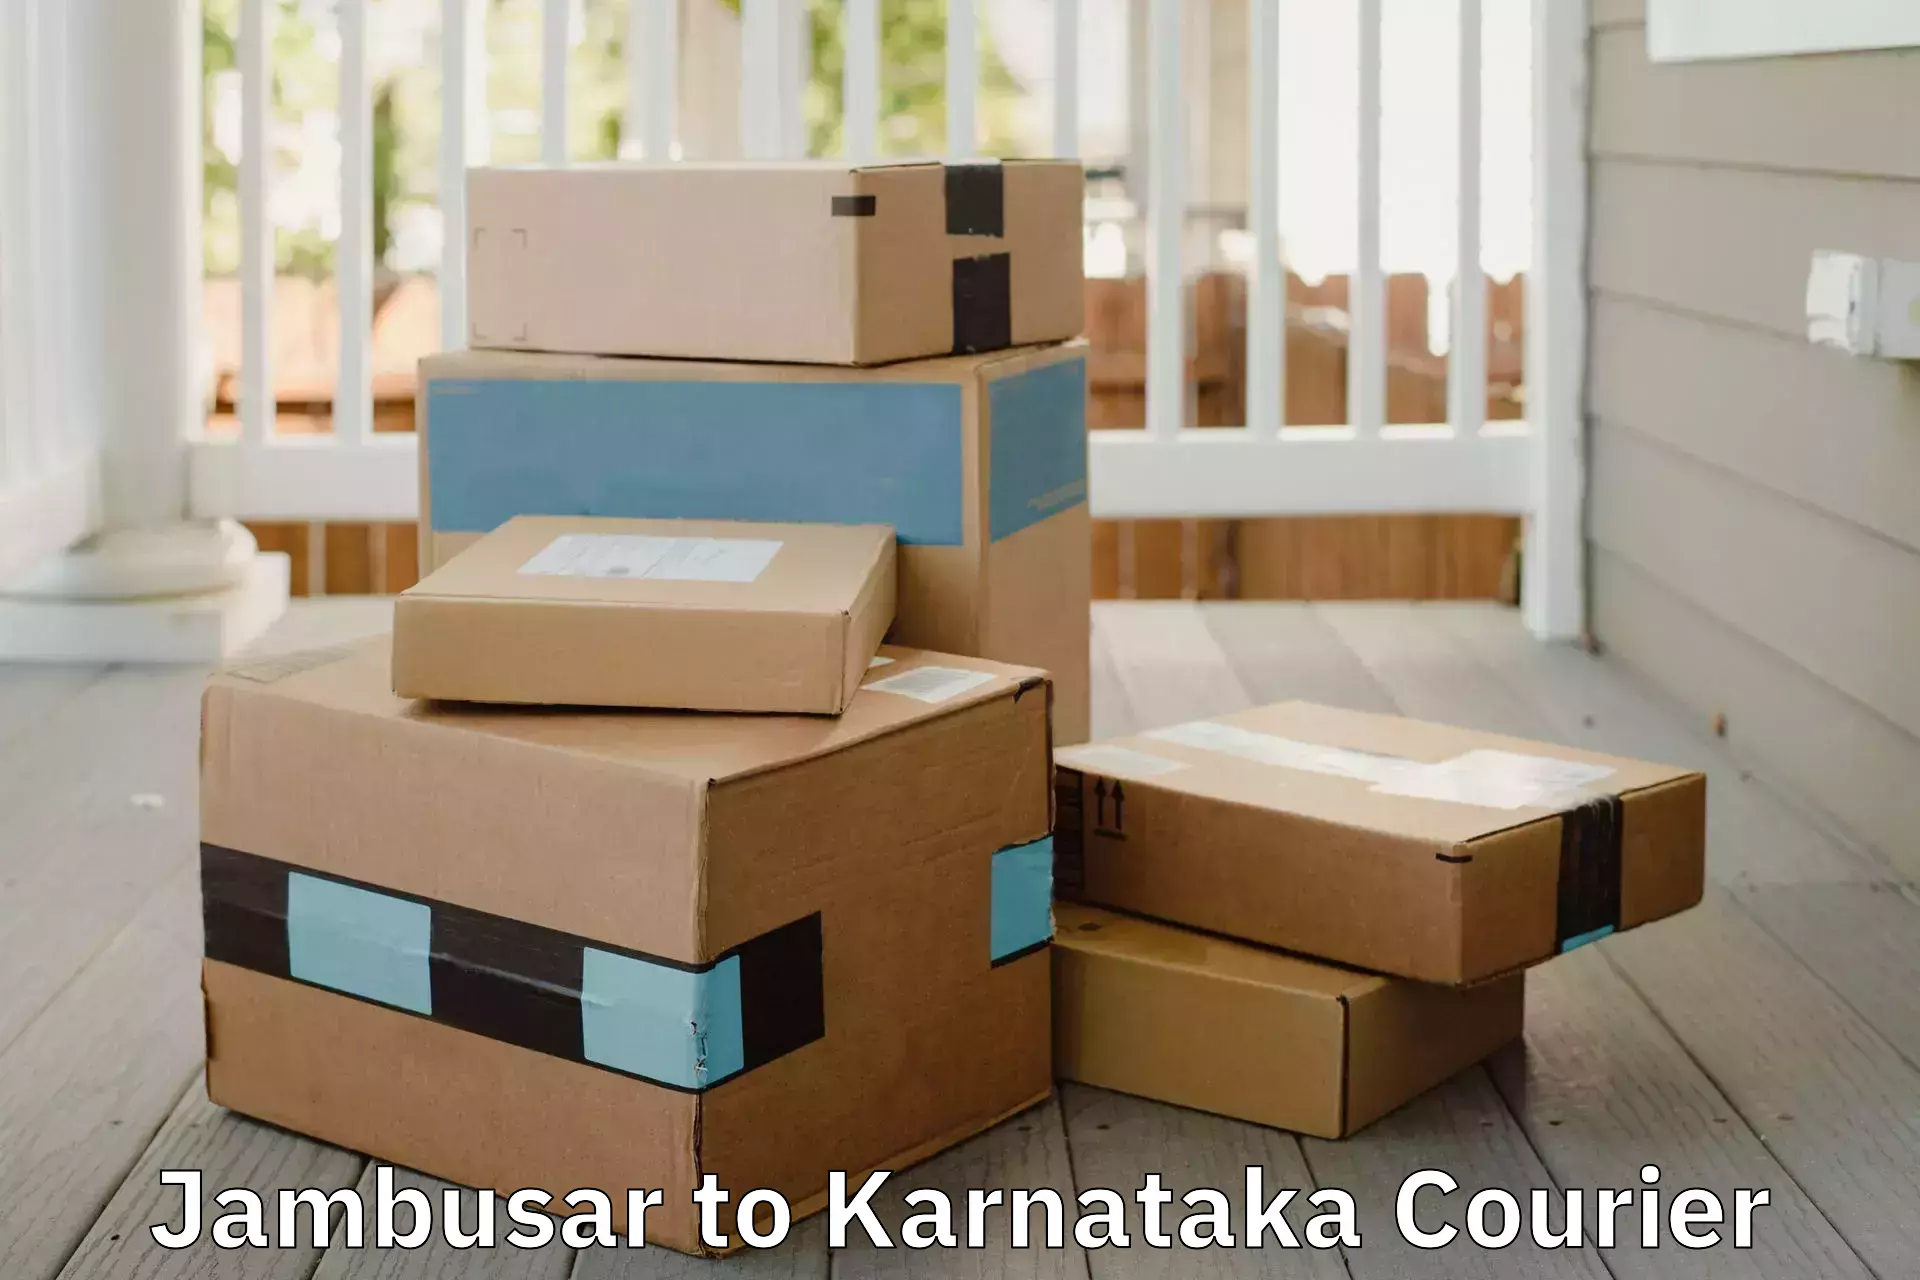 Furniture moving experts Jambusar to Karnataka